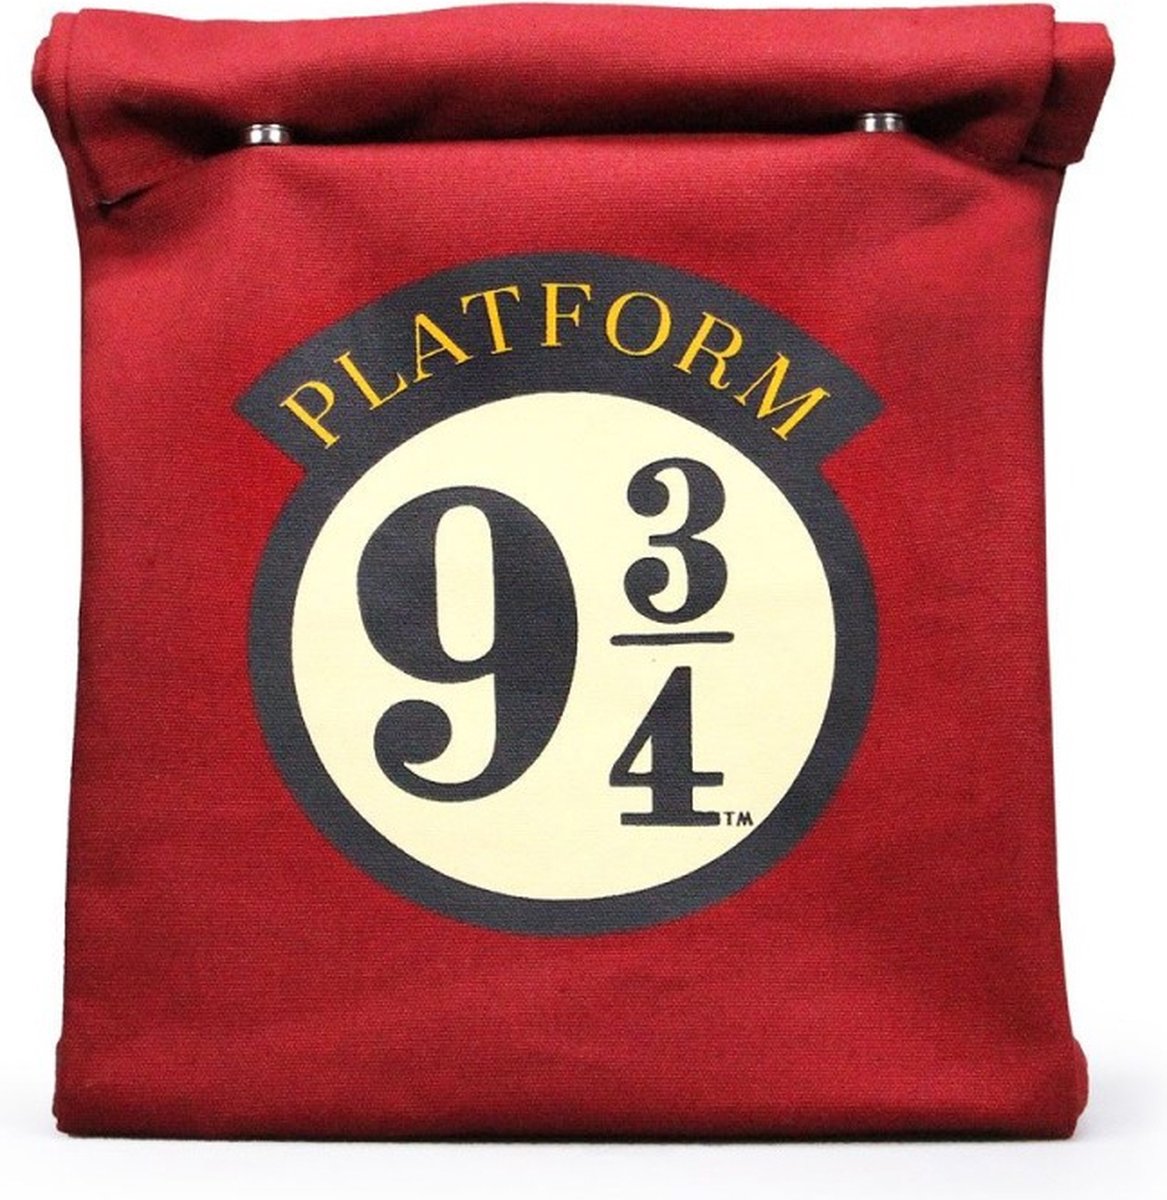 HARRY POTTER LUNCH BAG PLATFORM 9 3/4